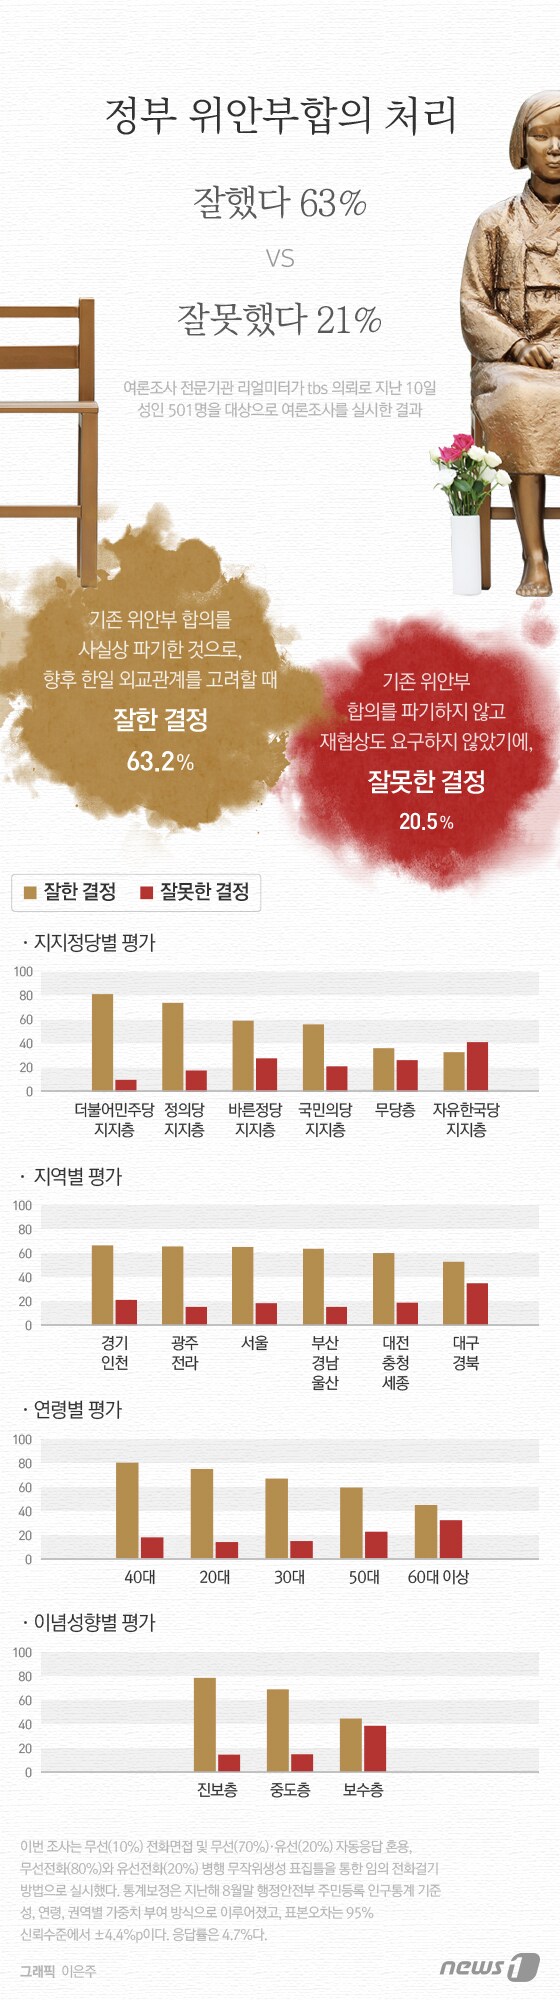 [그래픽뉴스] 정부 위안부합의 처리, "잘했다" 63% vs "잘못" 21%